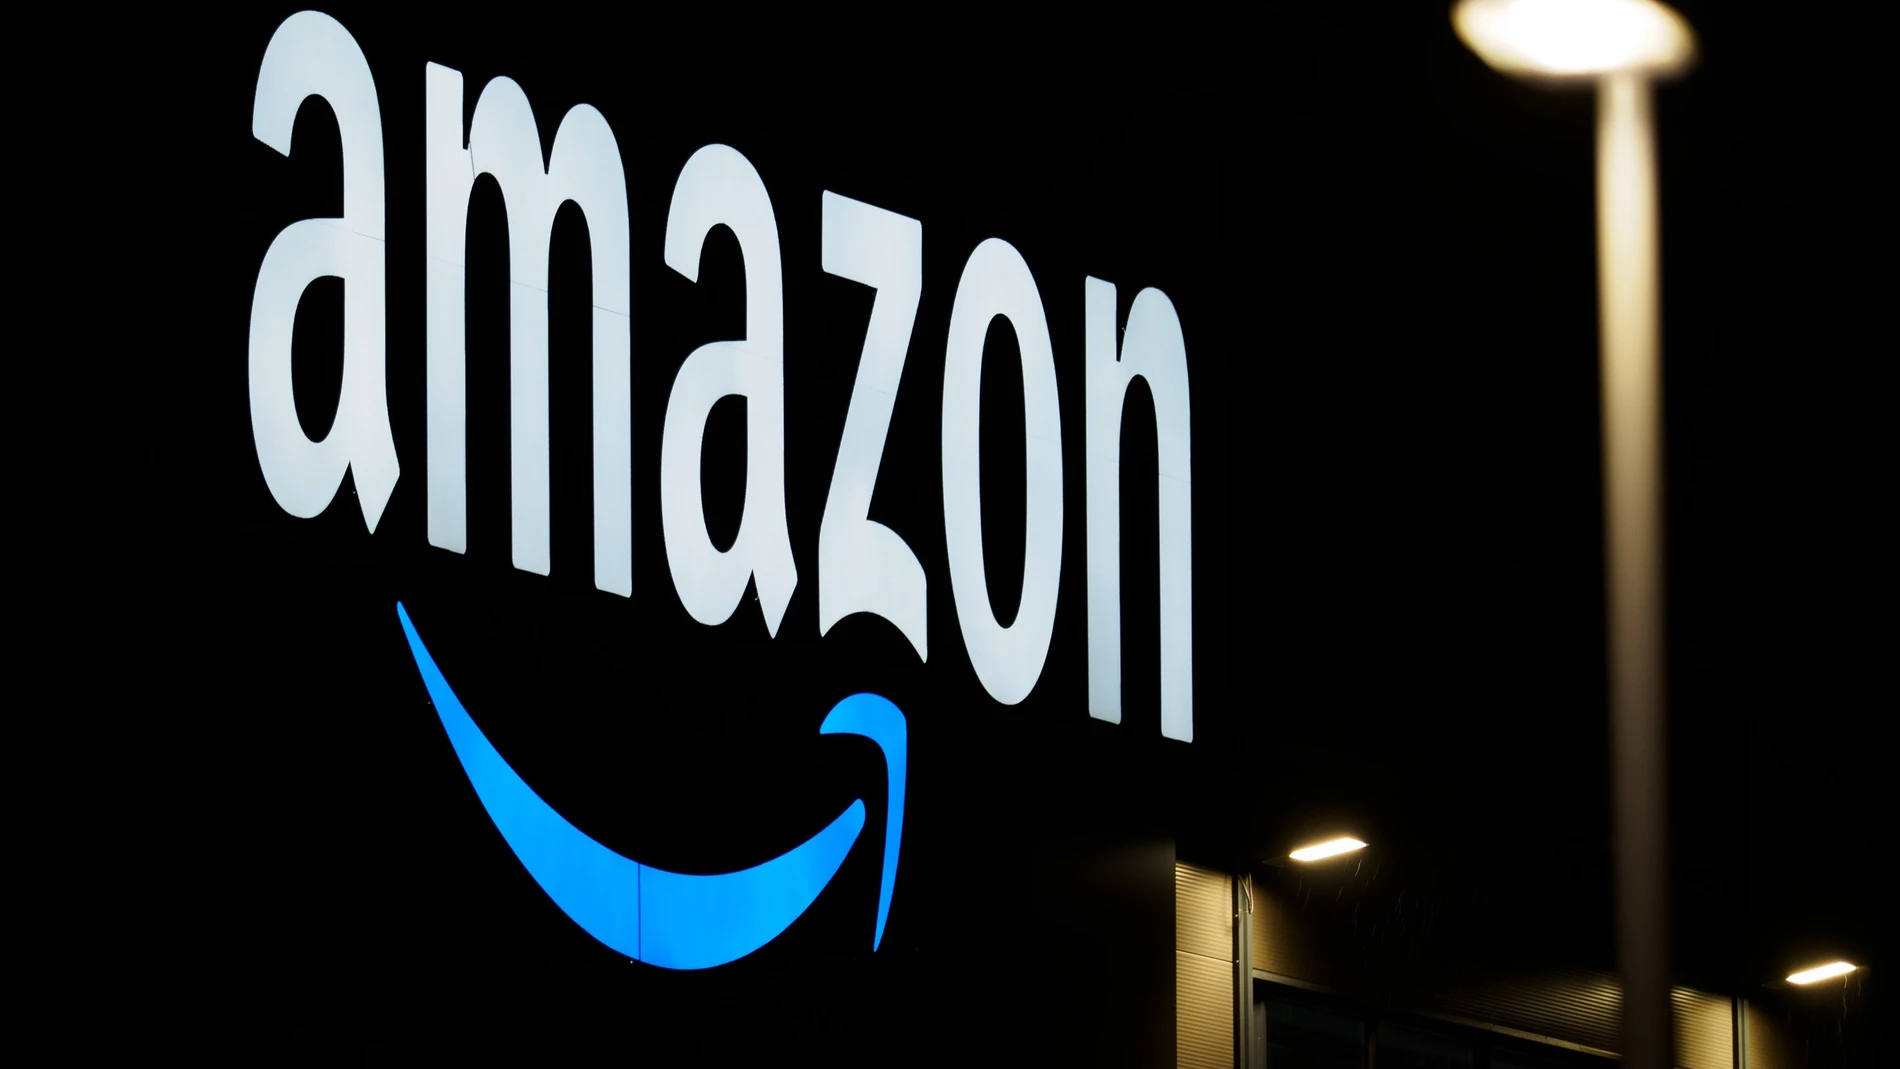 Bruselas da tres semanas a Amazon para que explique las medidas tomadas para reforzar protección del consumidor